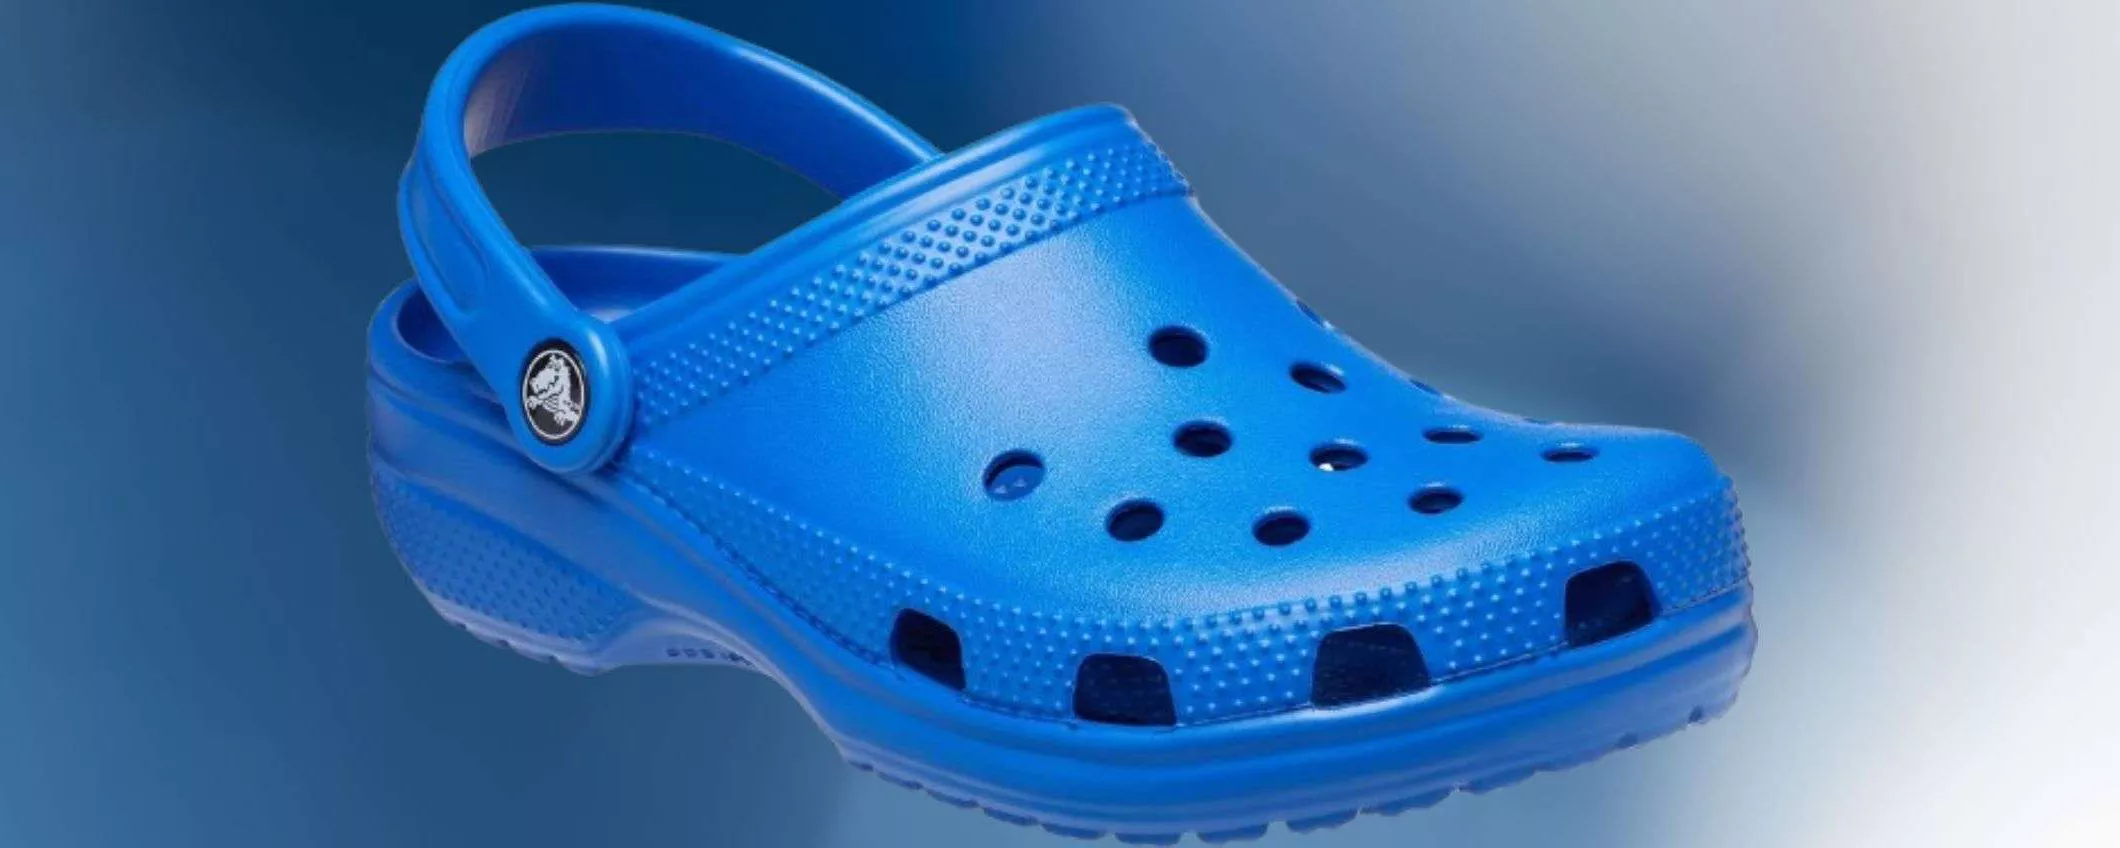 Scarpe Crocs a 23€, sconto 53% su Amazon: robuste e di qualità, prezzo SHOCK